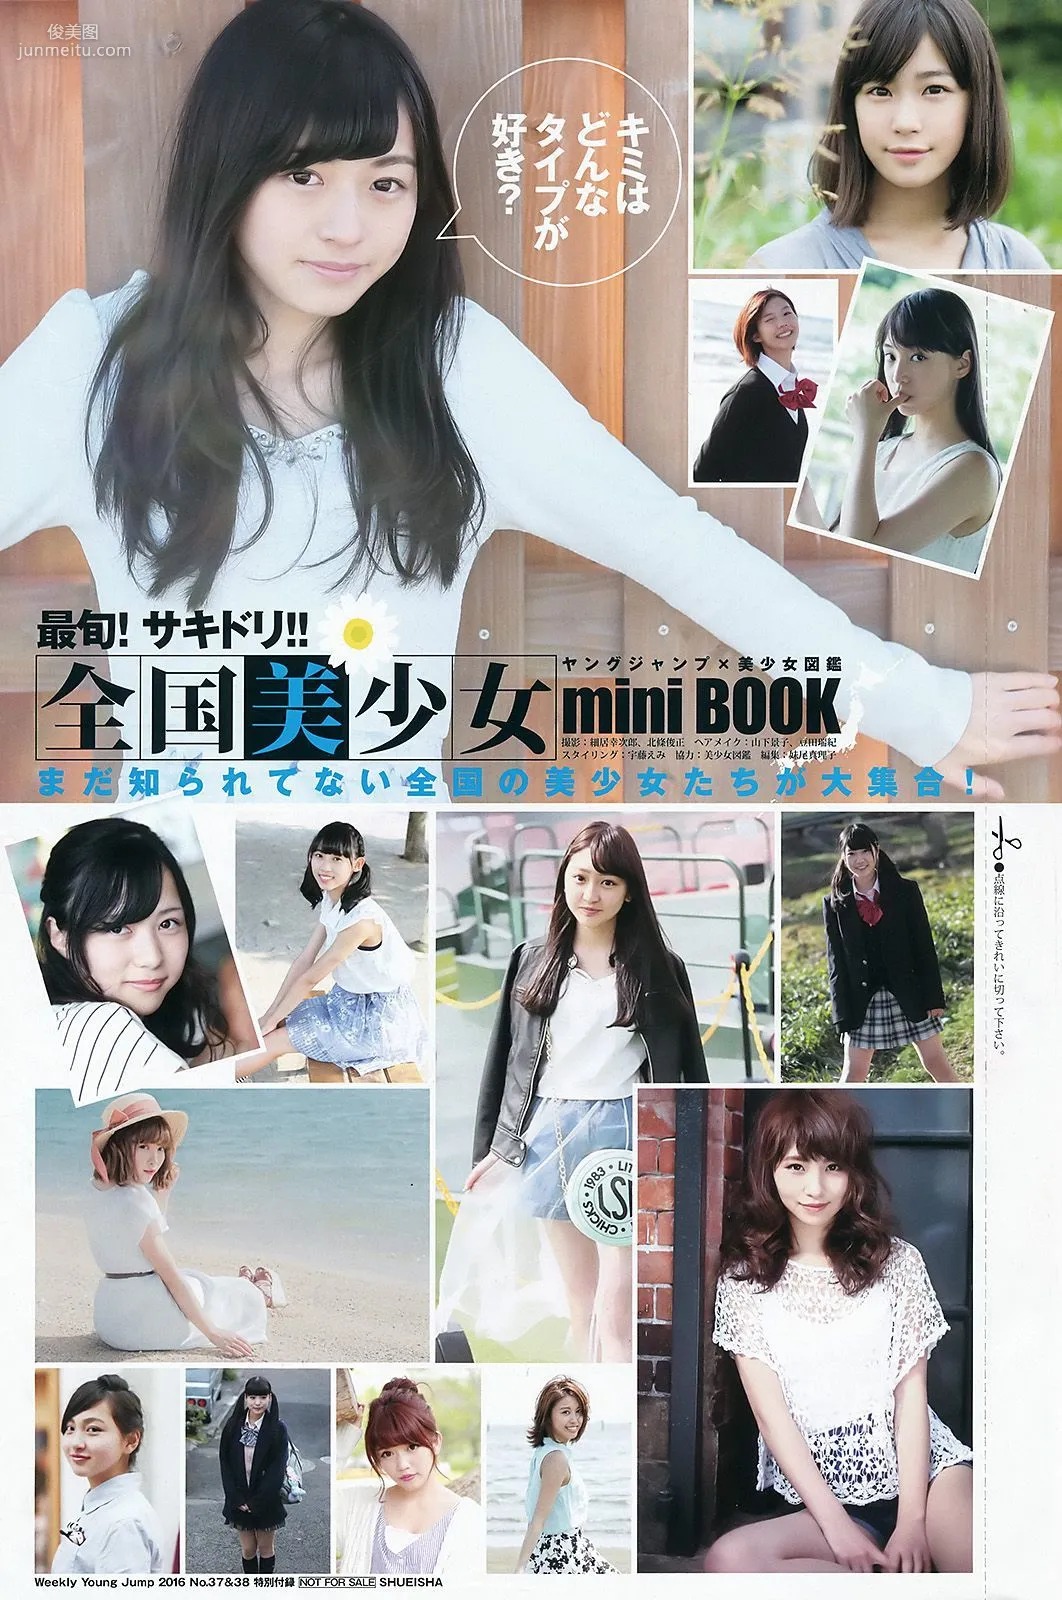 武田玲奈 全国美少女 mini BOOK [Weekly Young Jump週刊ヤングジャンプ] 2016年No.37-38写真杂志22